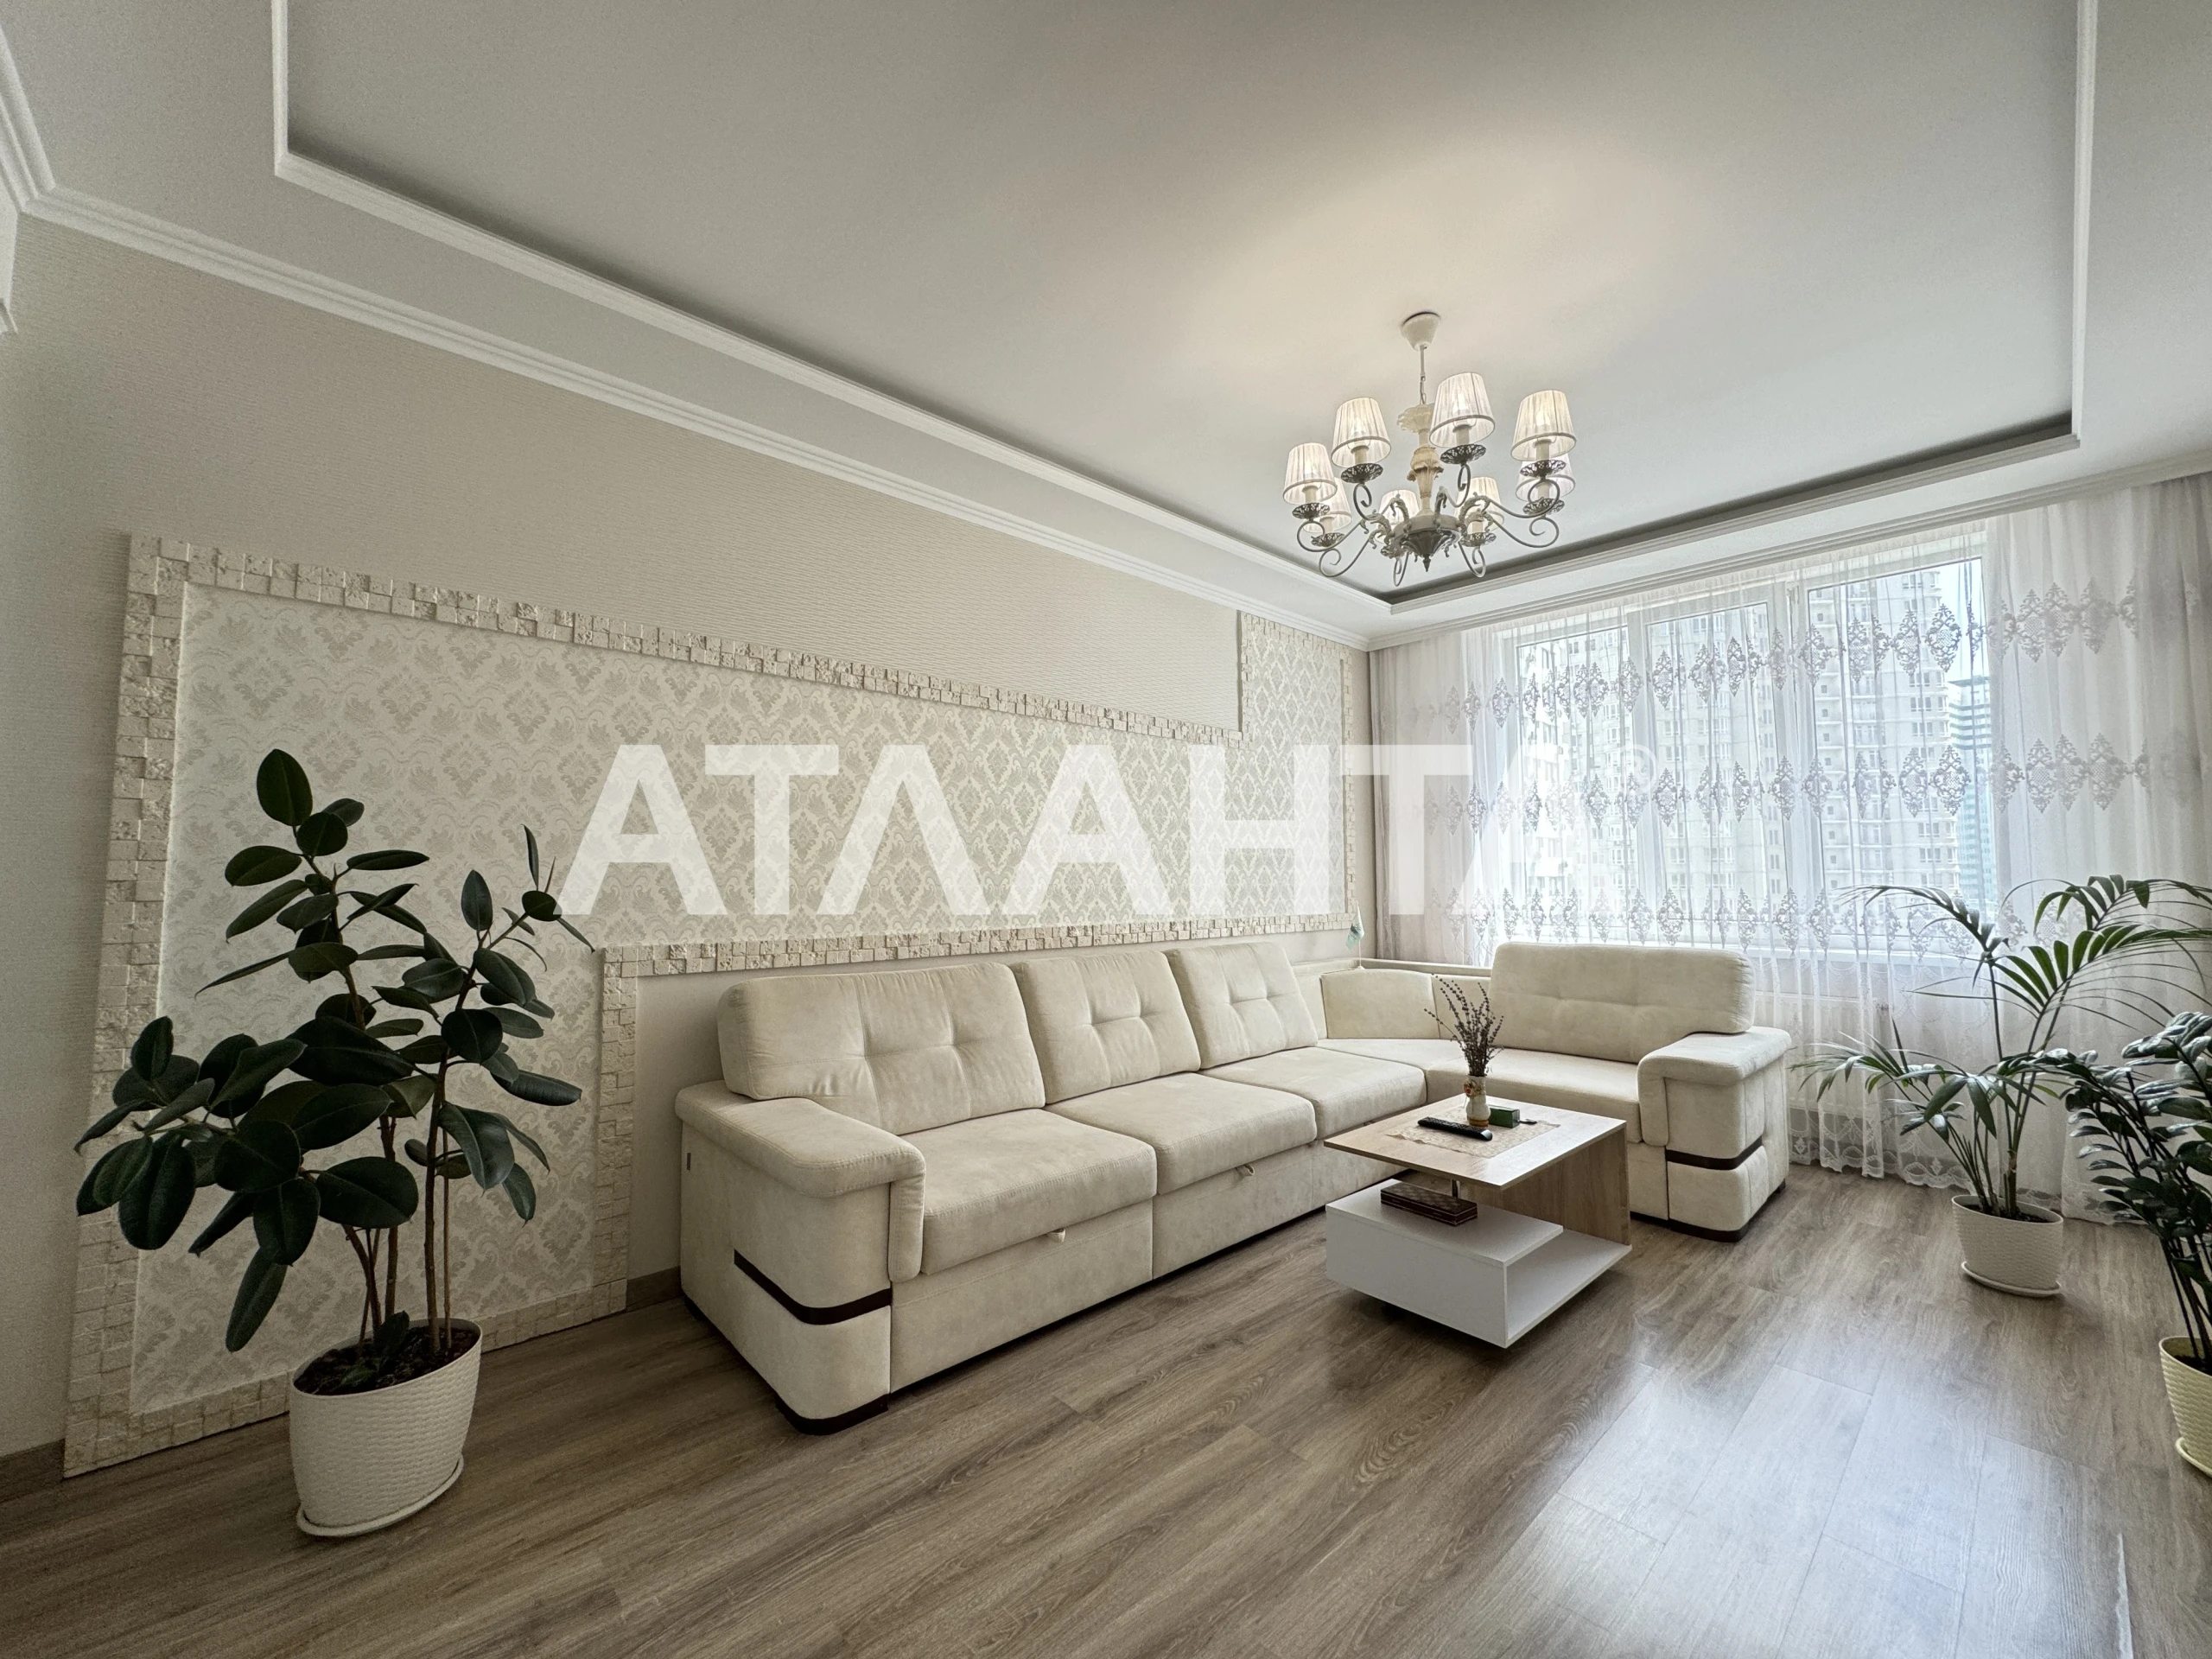 Продается уютная квартира в ЖК "Альтаир-1"